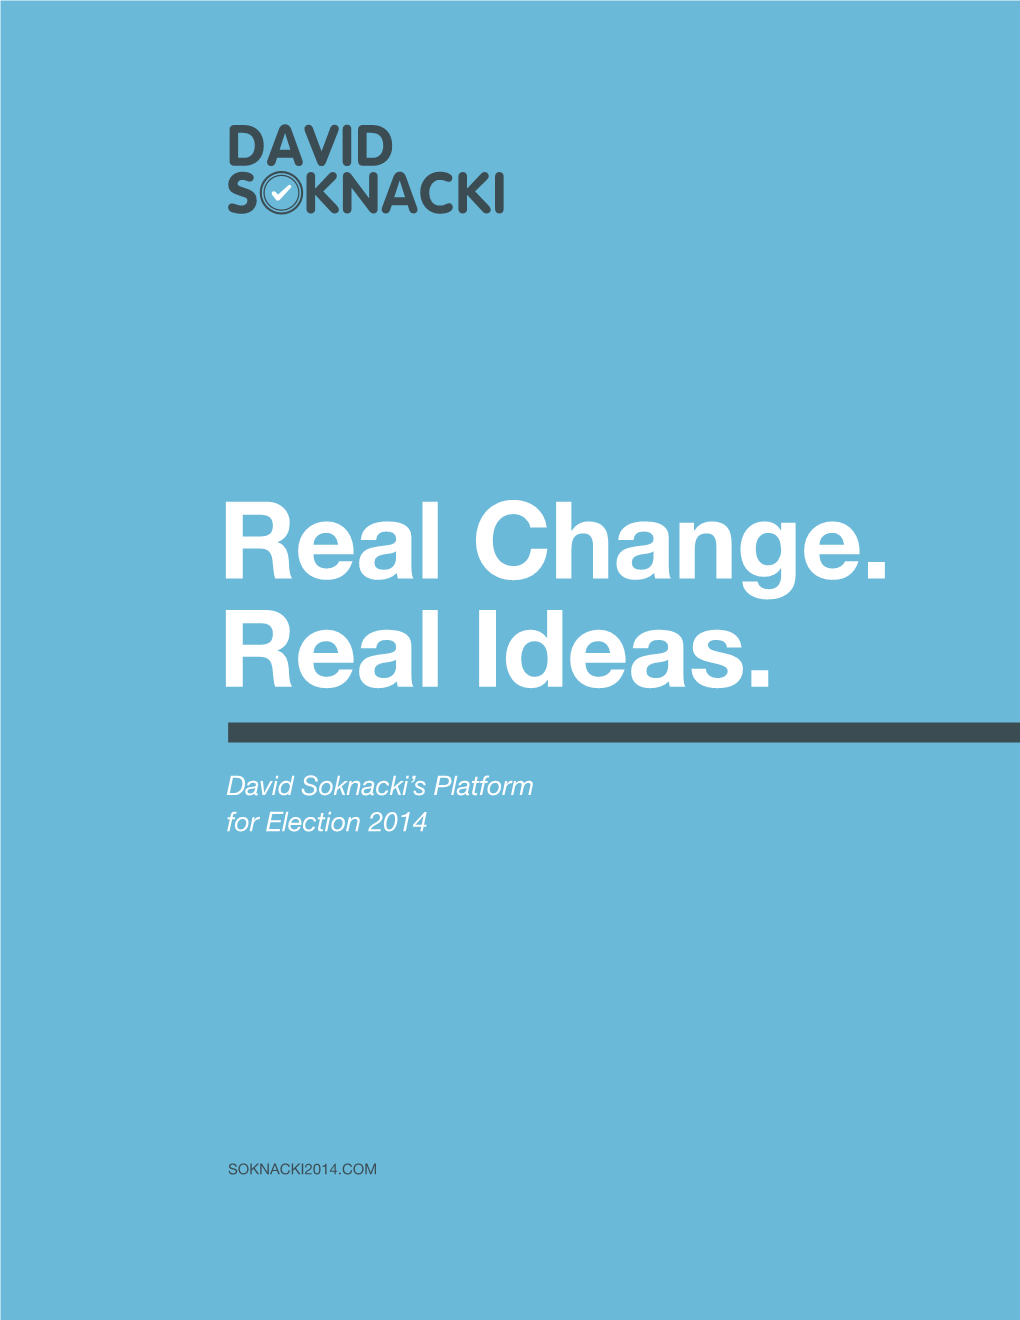 David Soknacki's Platform for Election 2014